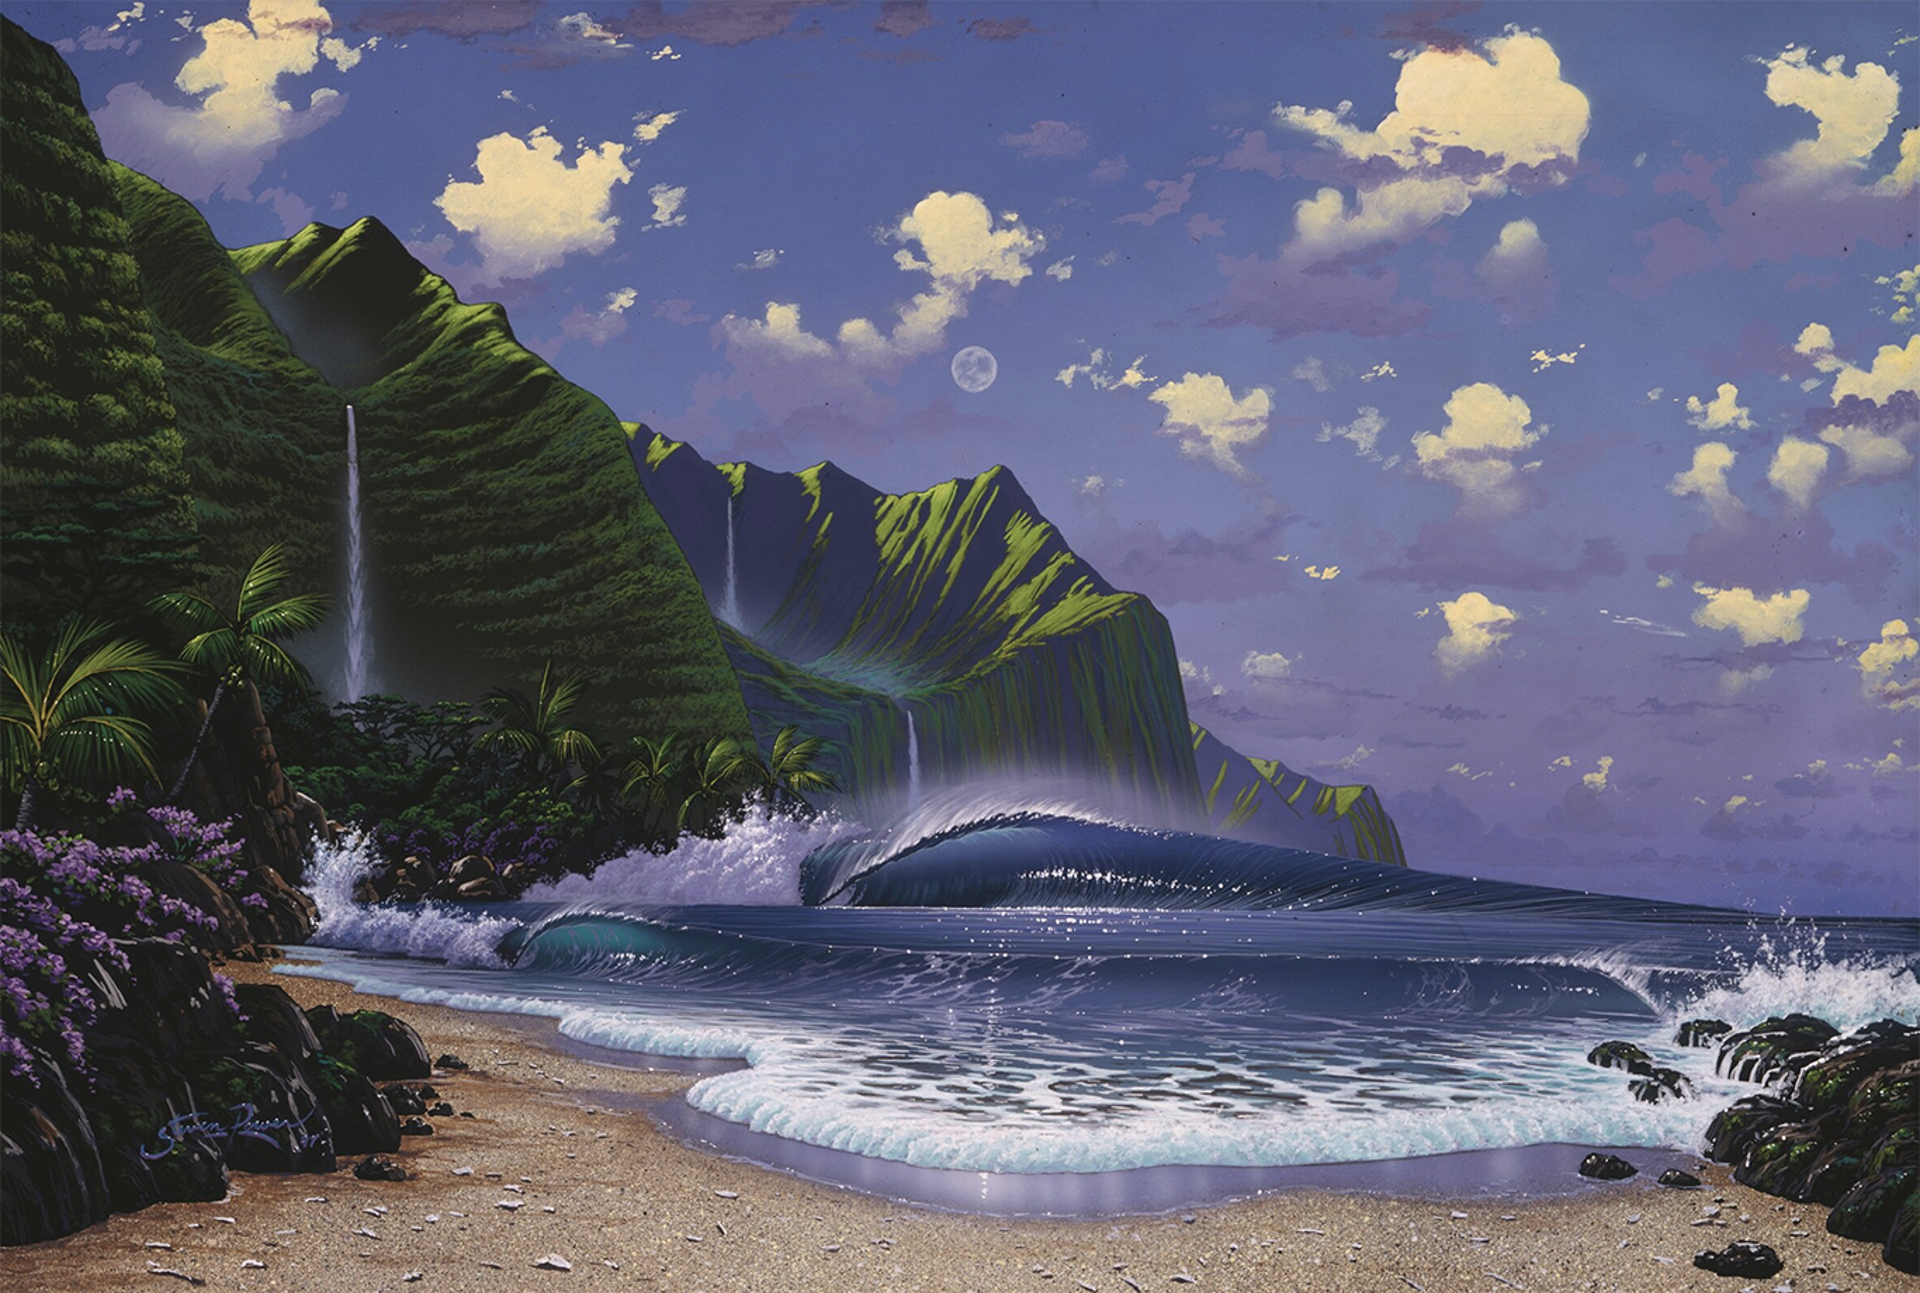 Kauai Dream by Steven Power